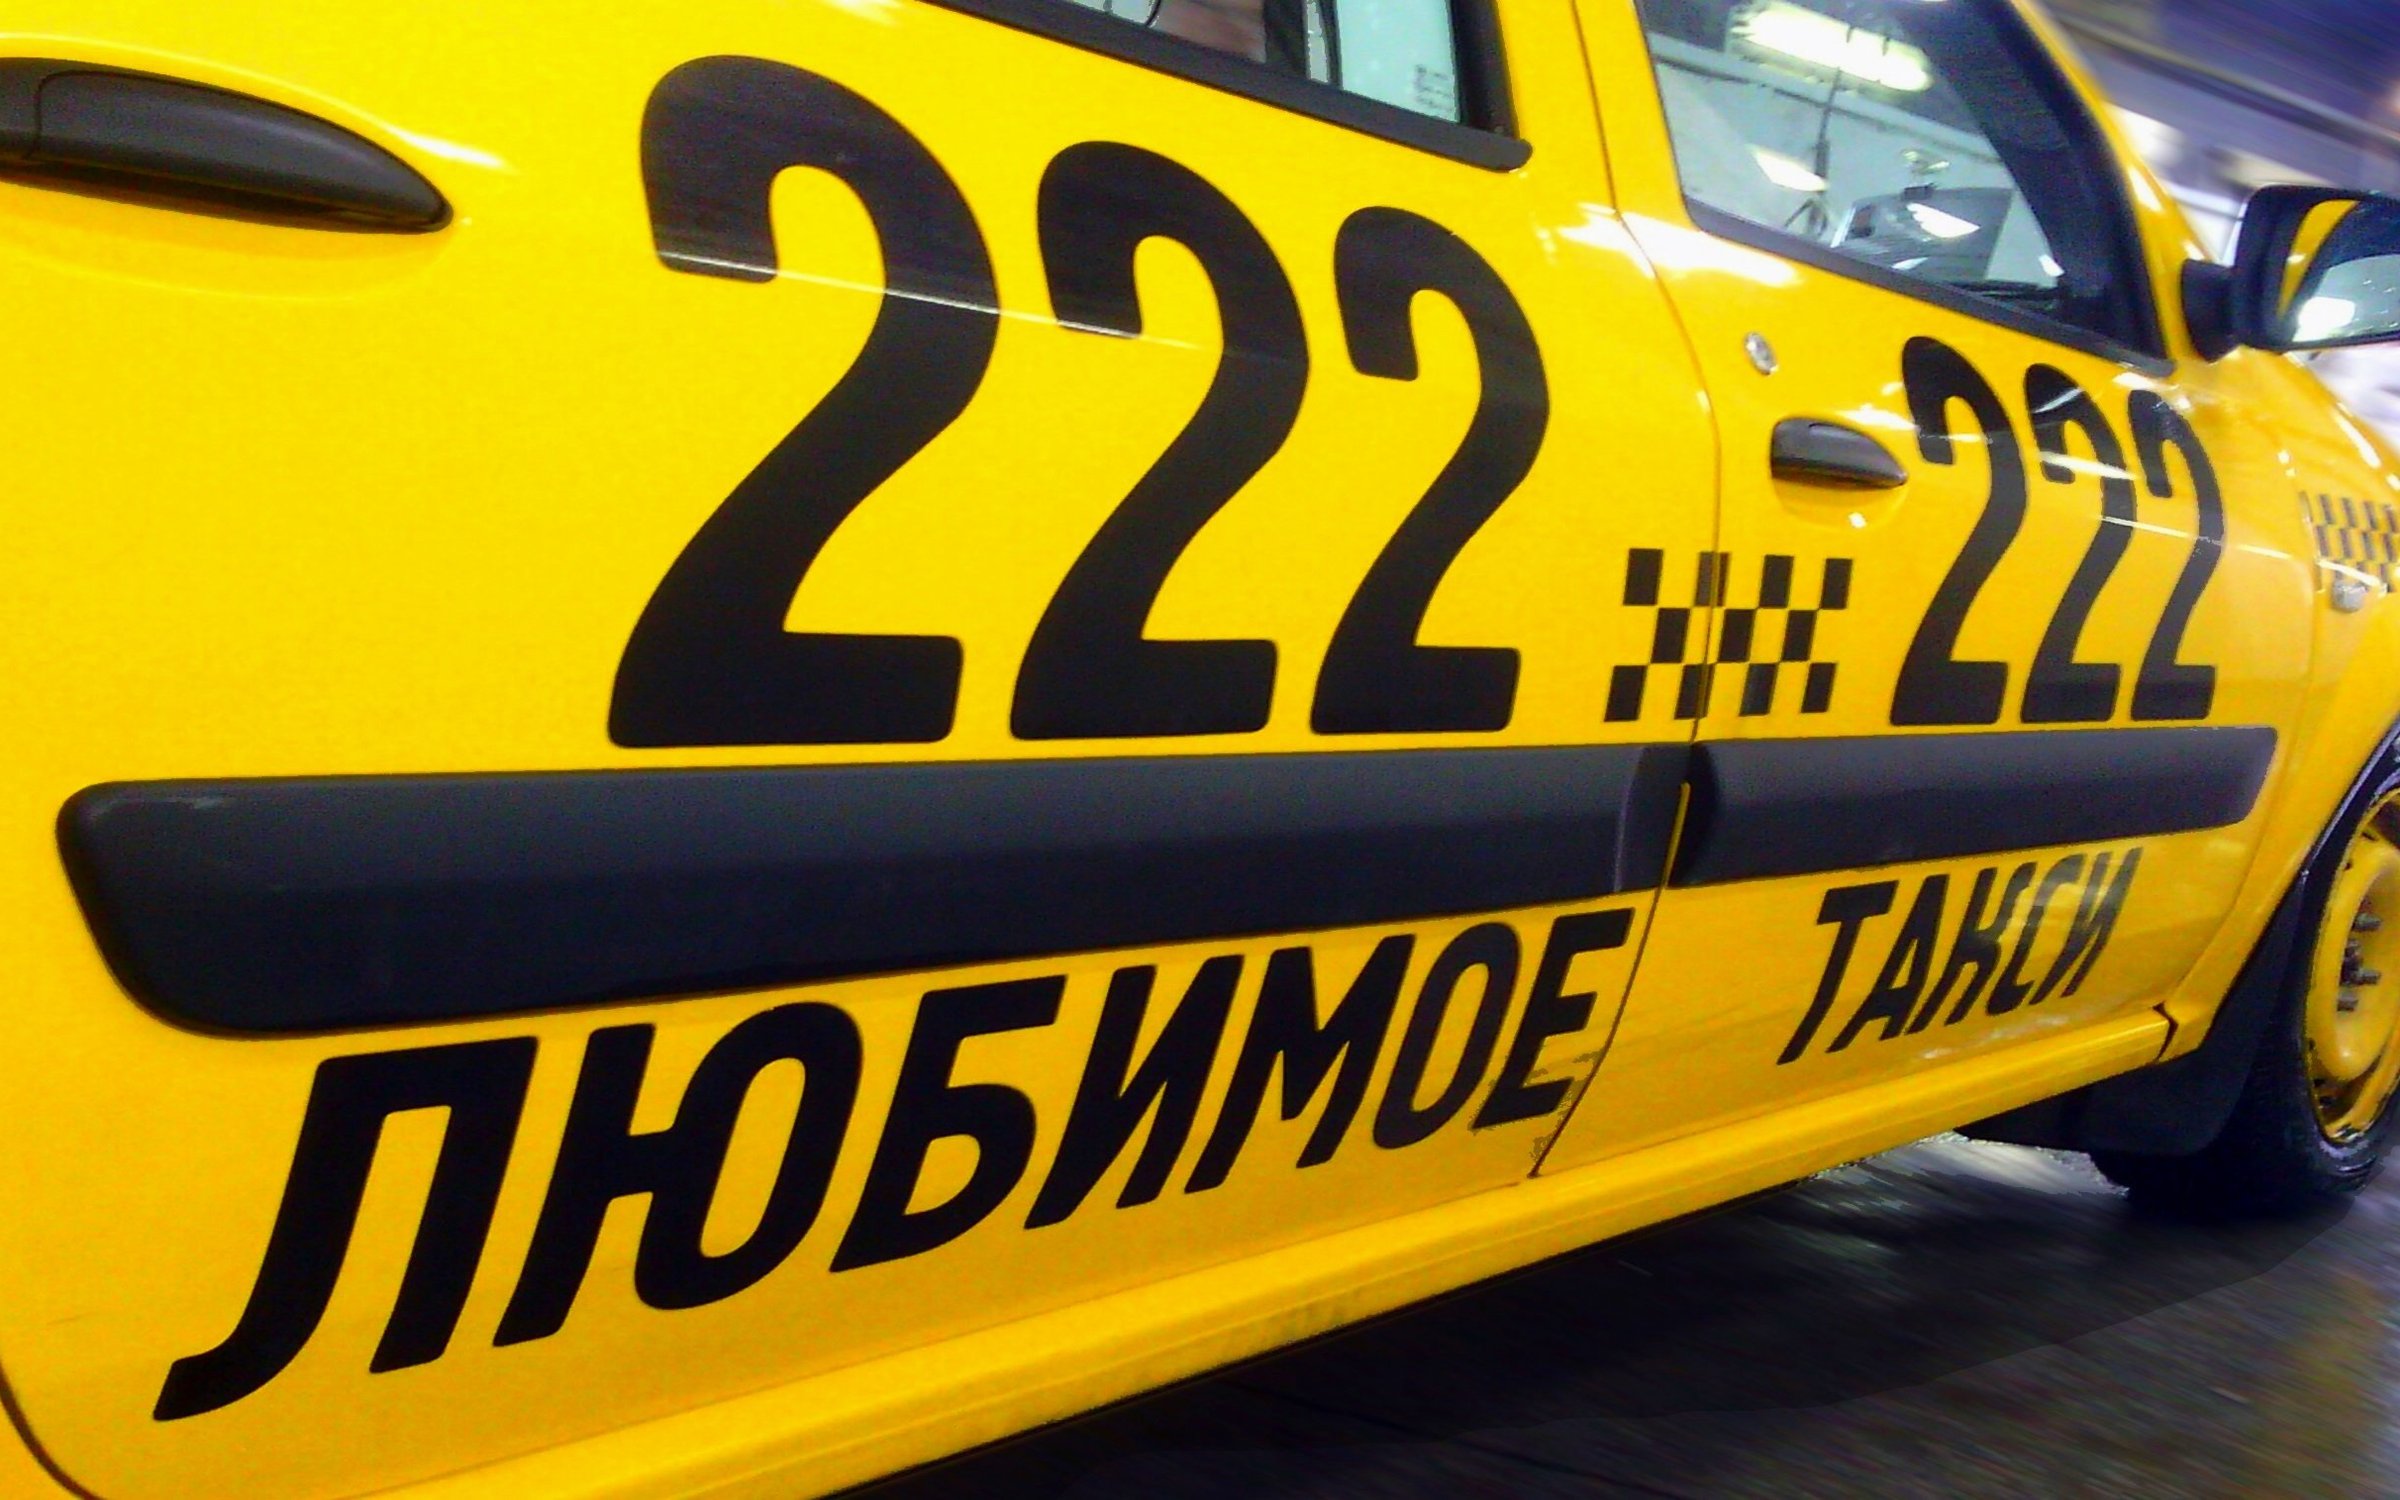 Заказ такси ставрополь номер телефона. Городское такси реклама. Такси Ставрополь. Таксопарк Ставрополь. Такси 222222.